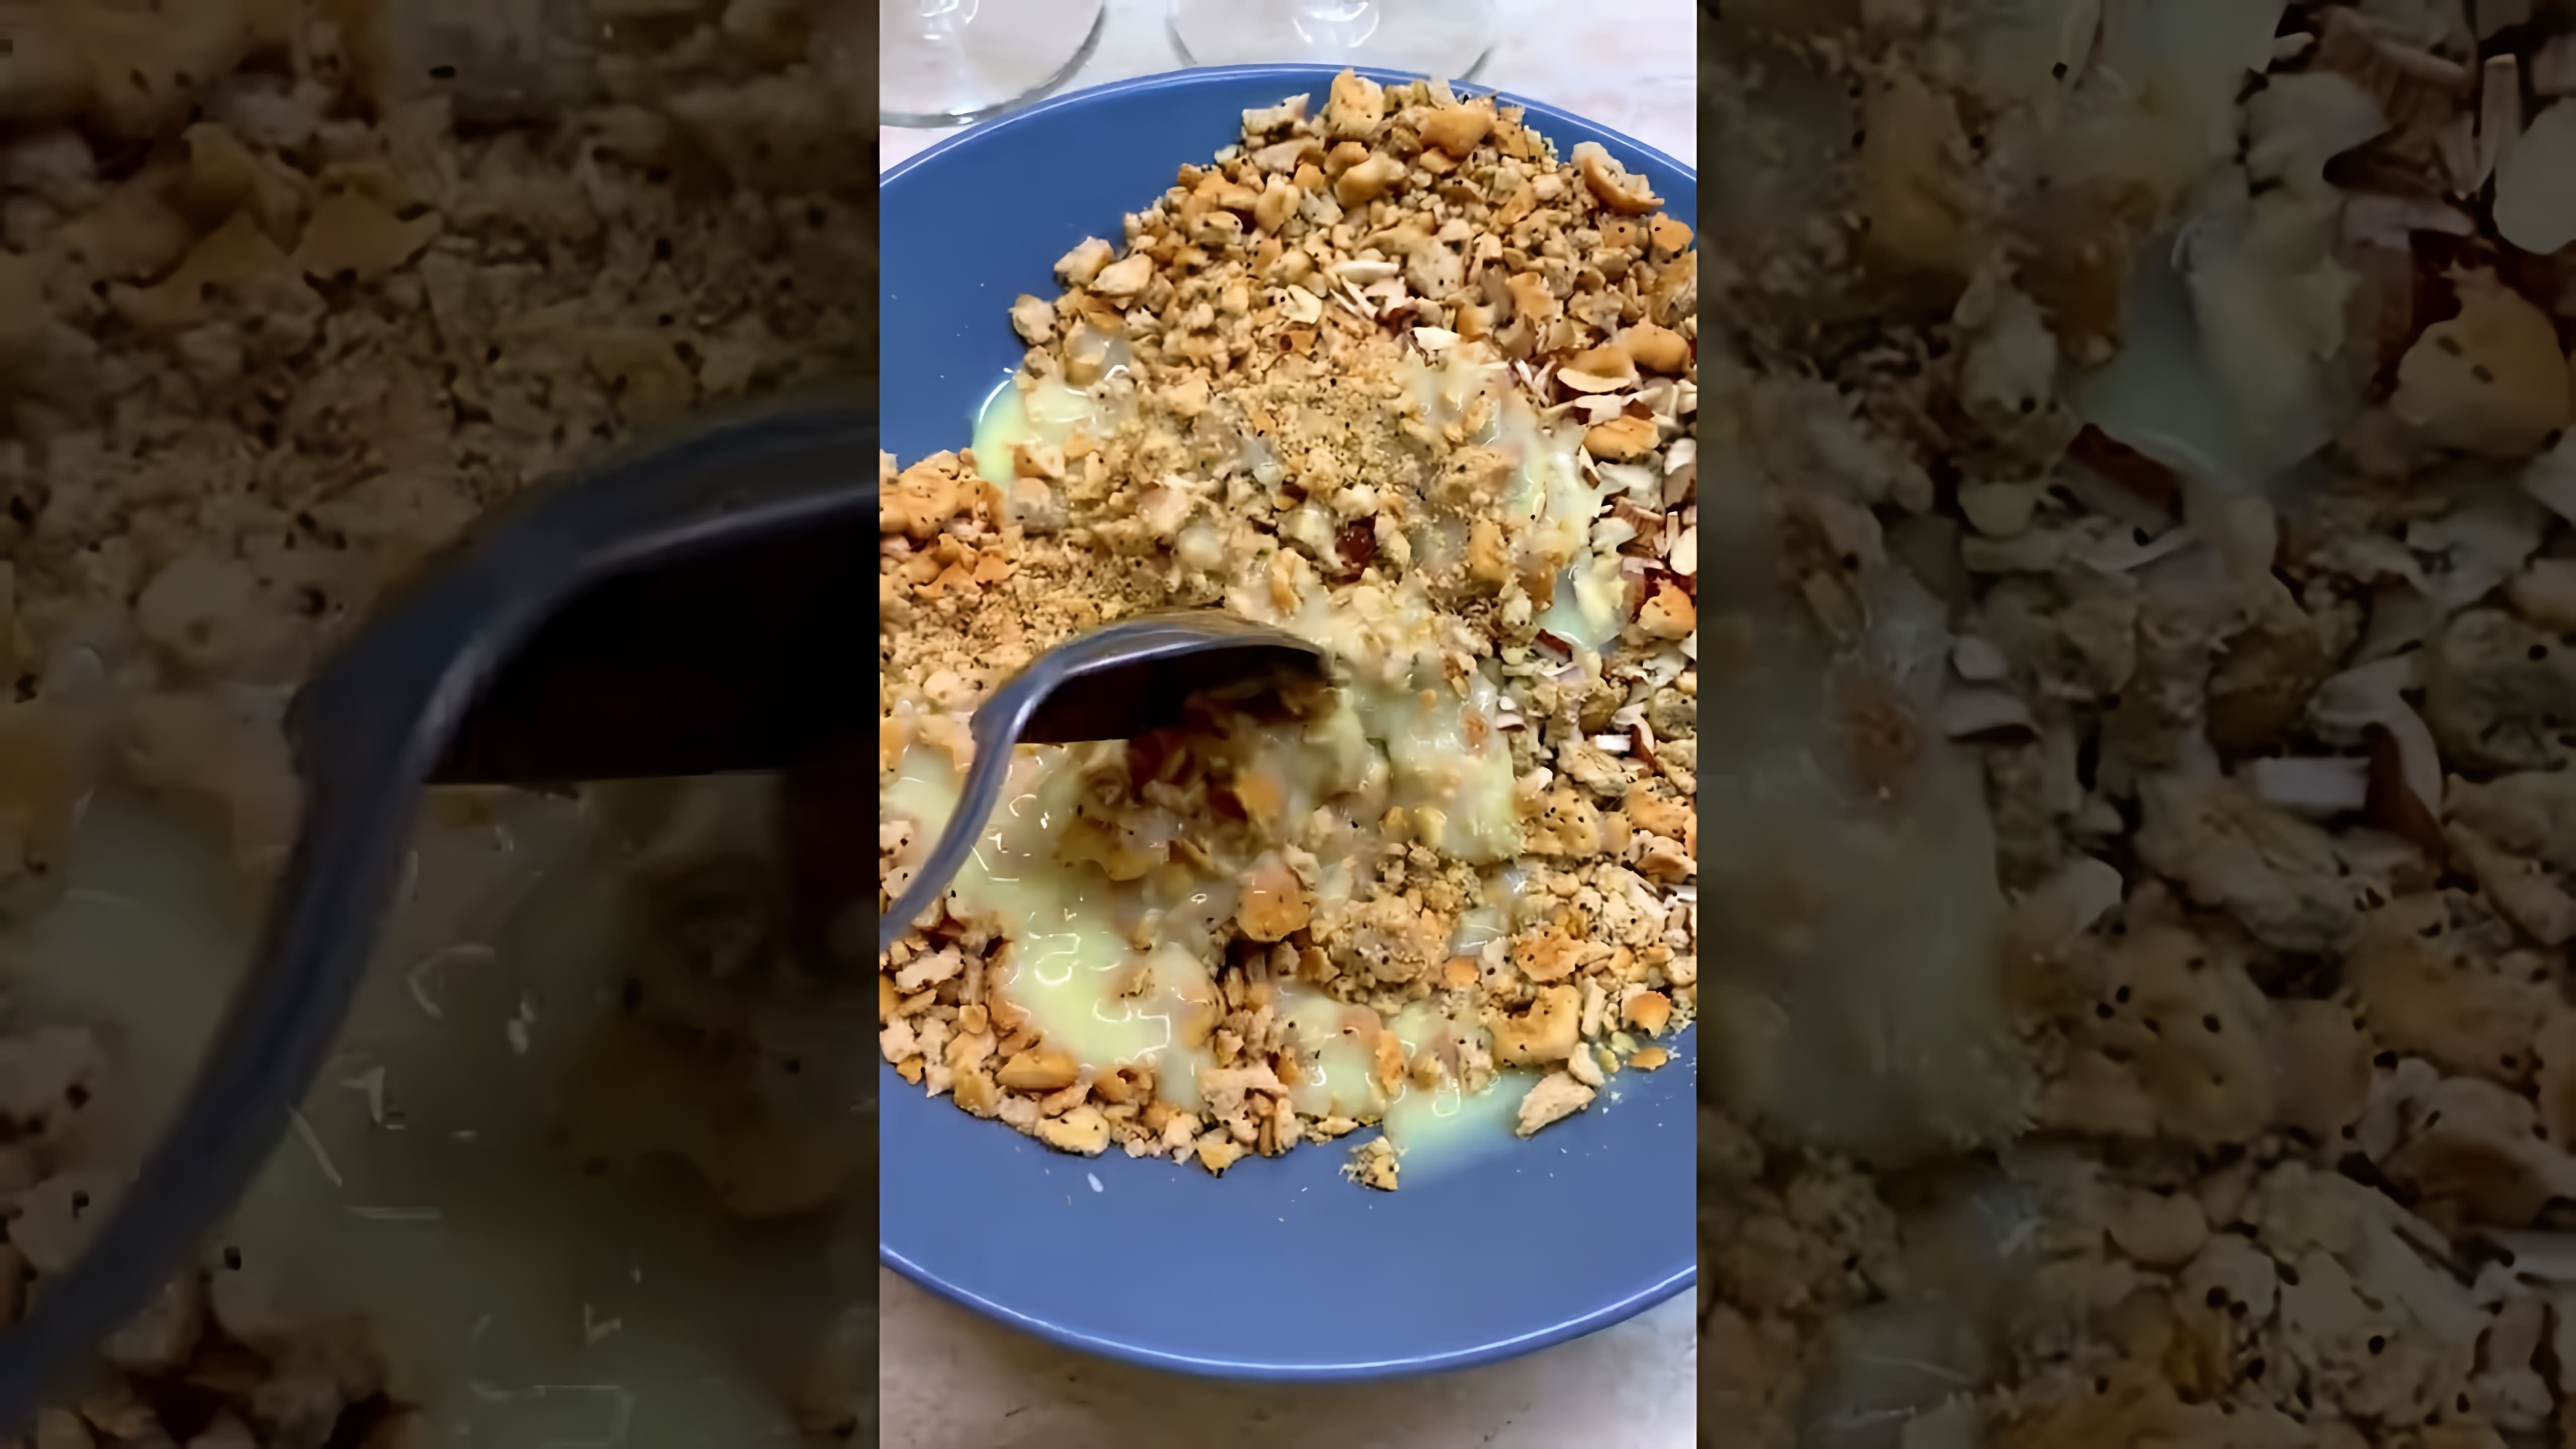 В этом видео демонстрируется рецепт приготовления муравейника без использования масла